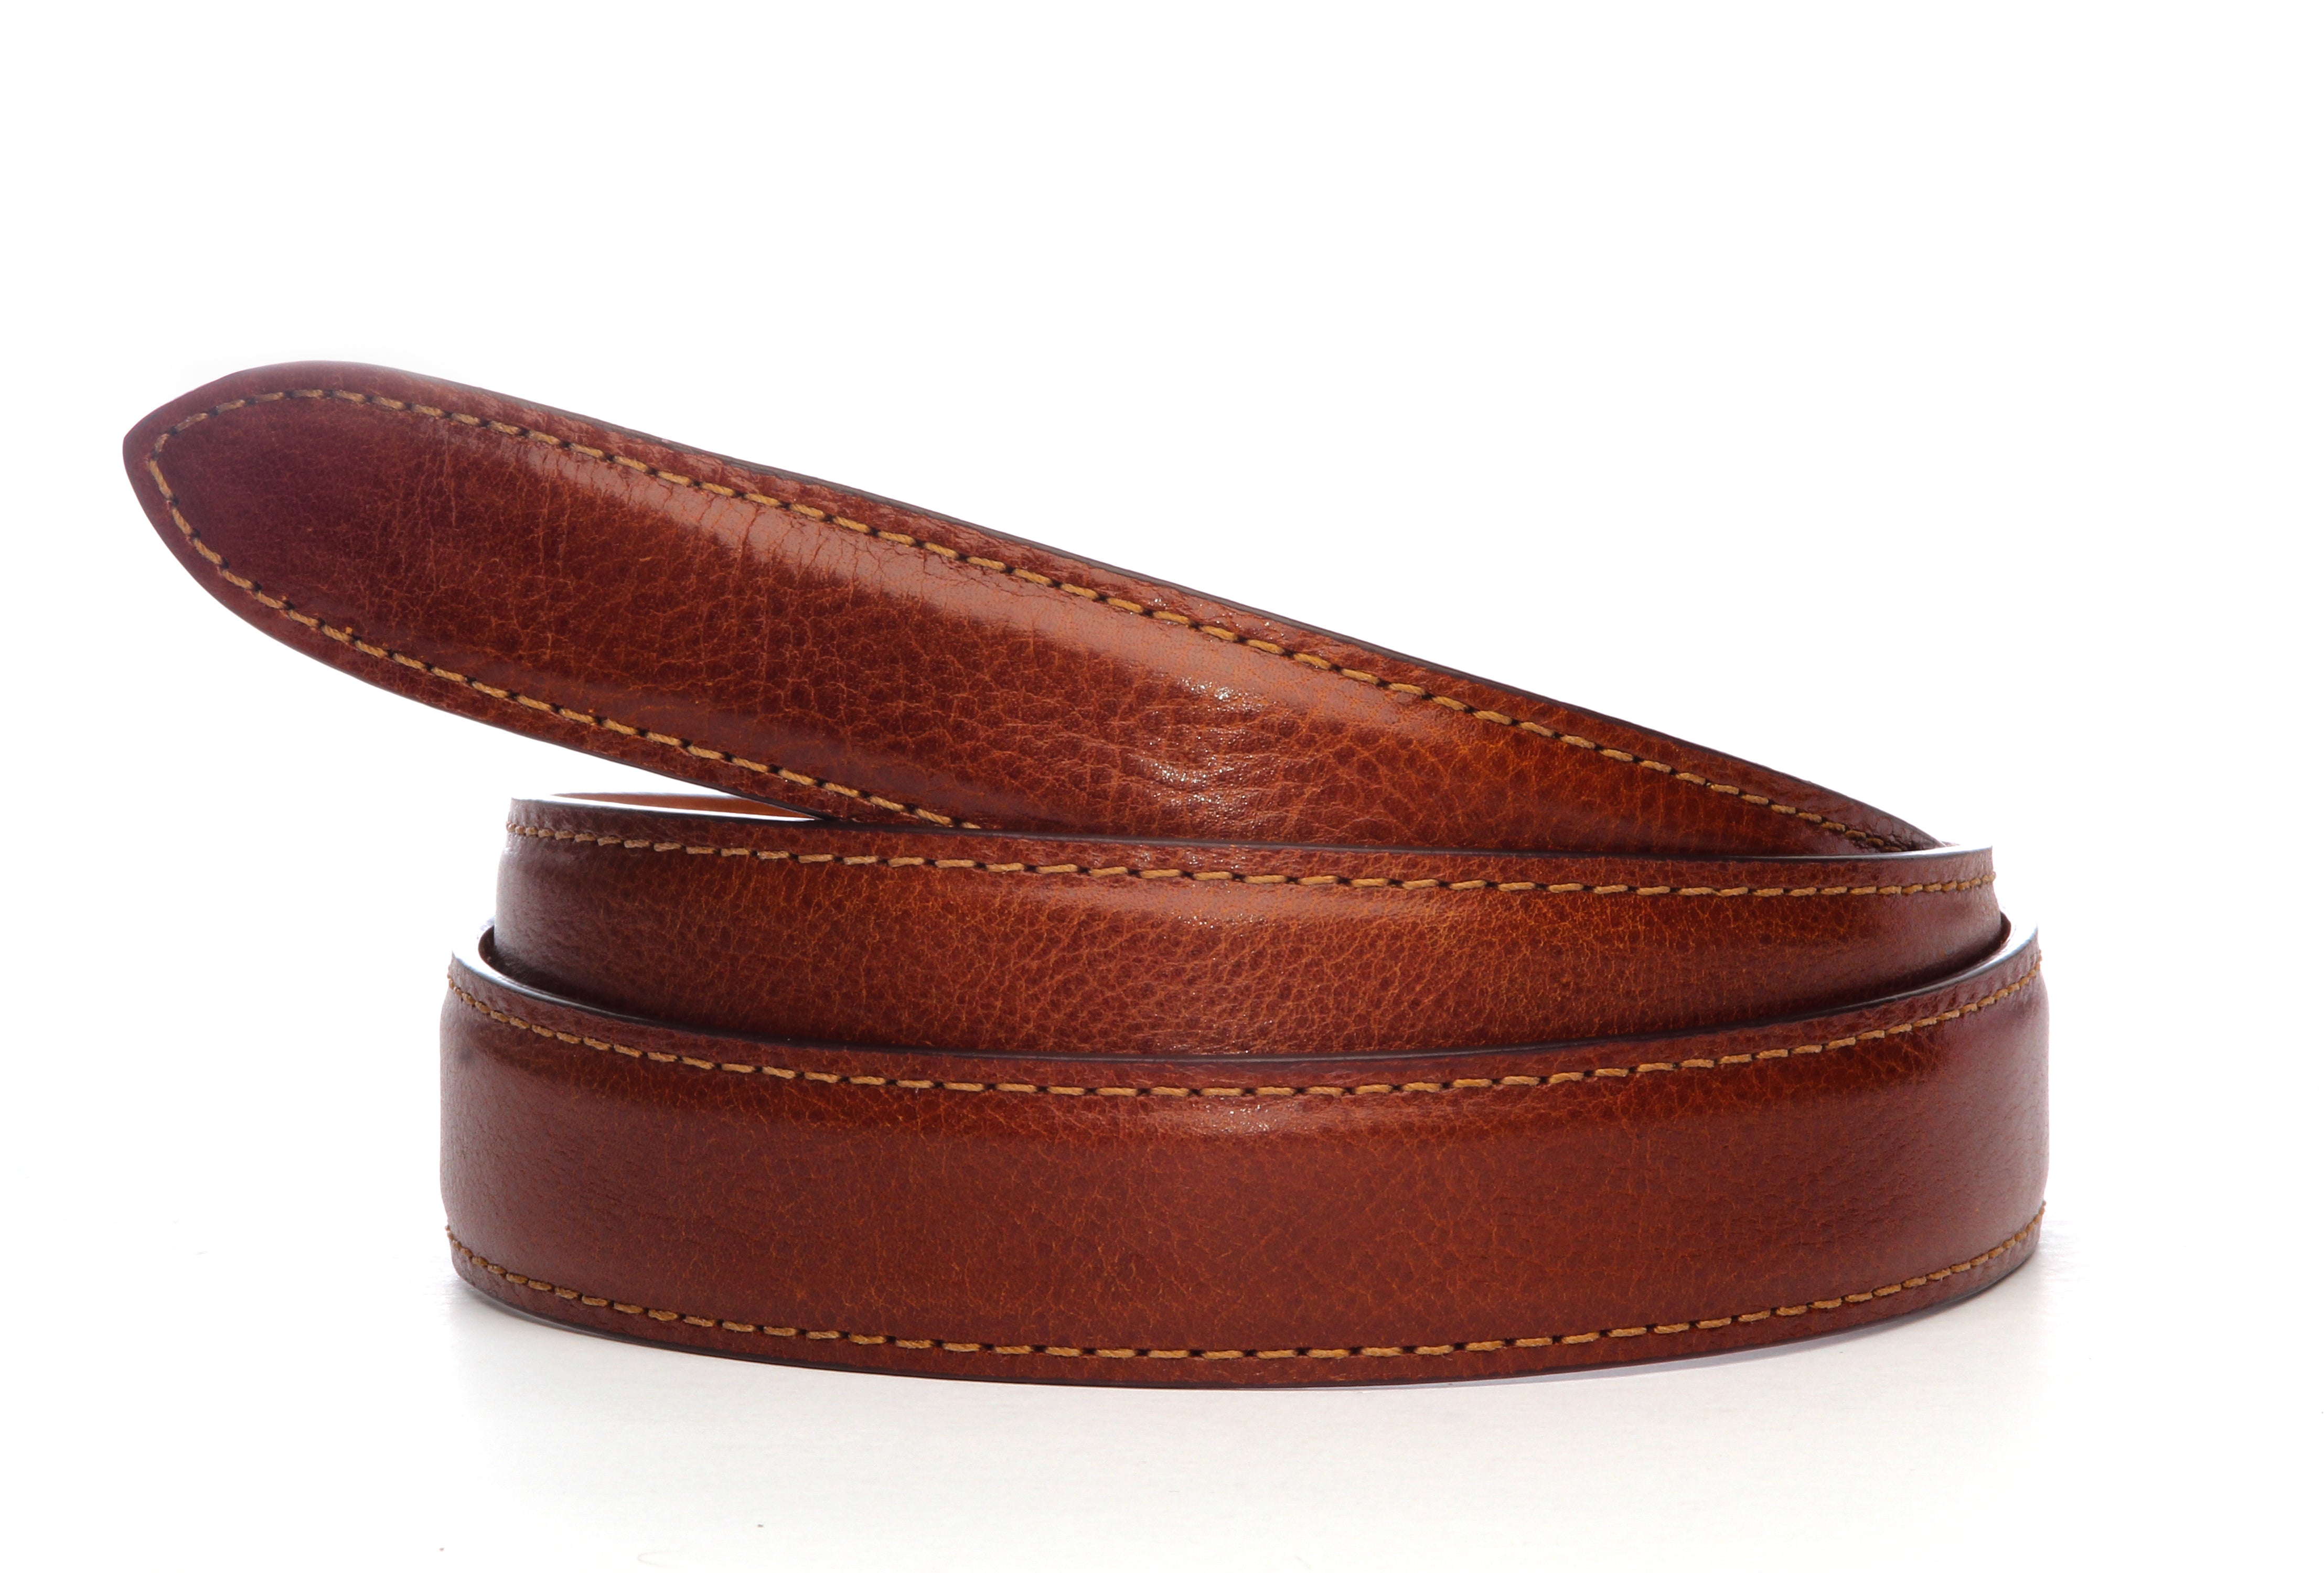 Italian Calfskin Belt Strap - Men's Ratchet Belt - Cognac, 1.25